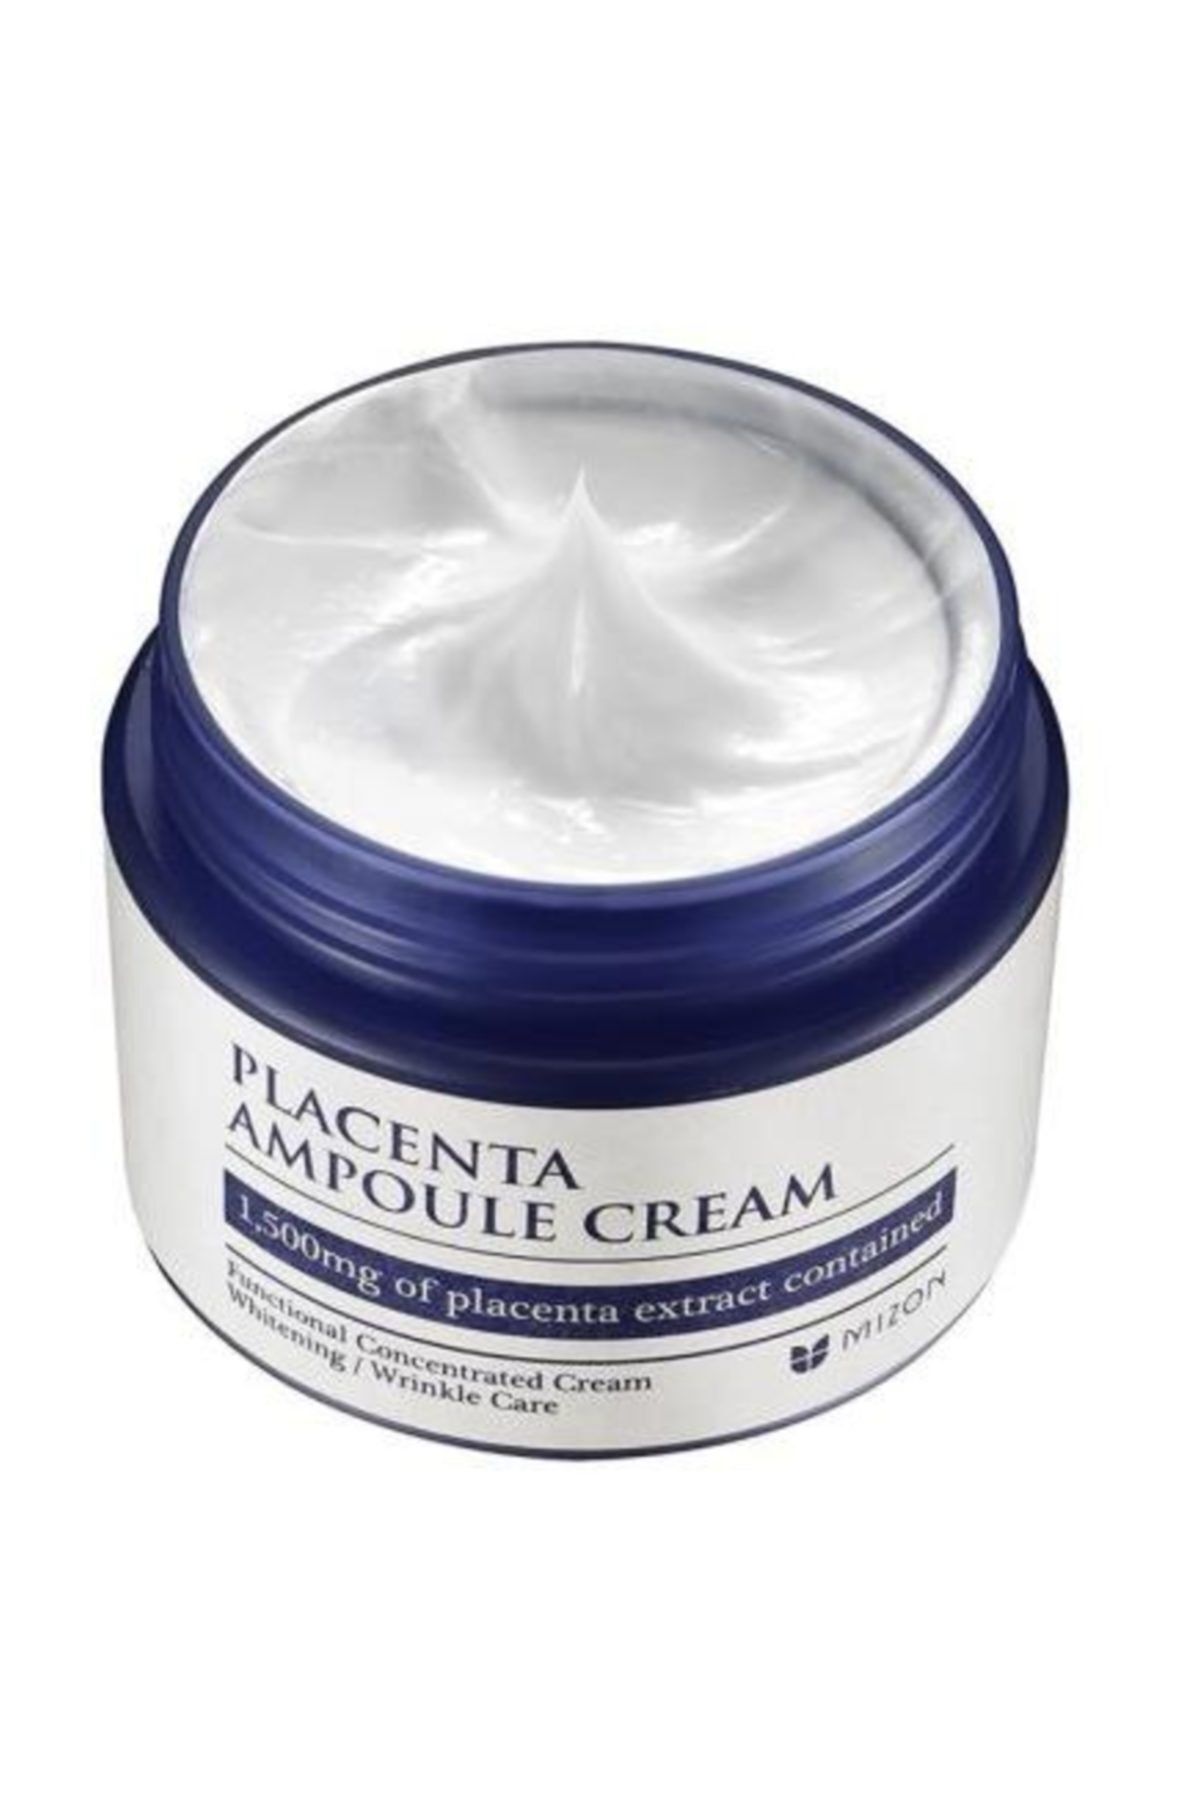 Питательный крем маска. Placenta Ampoule Cream. Крем placenta Корея. Плацентарный крем Mizon. Крем Мизон Корея для лица.